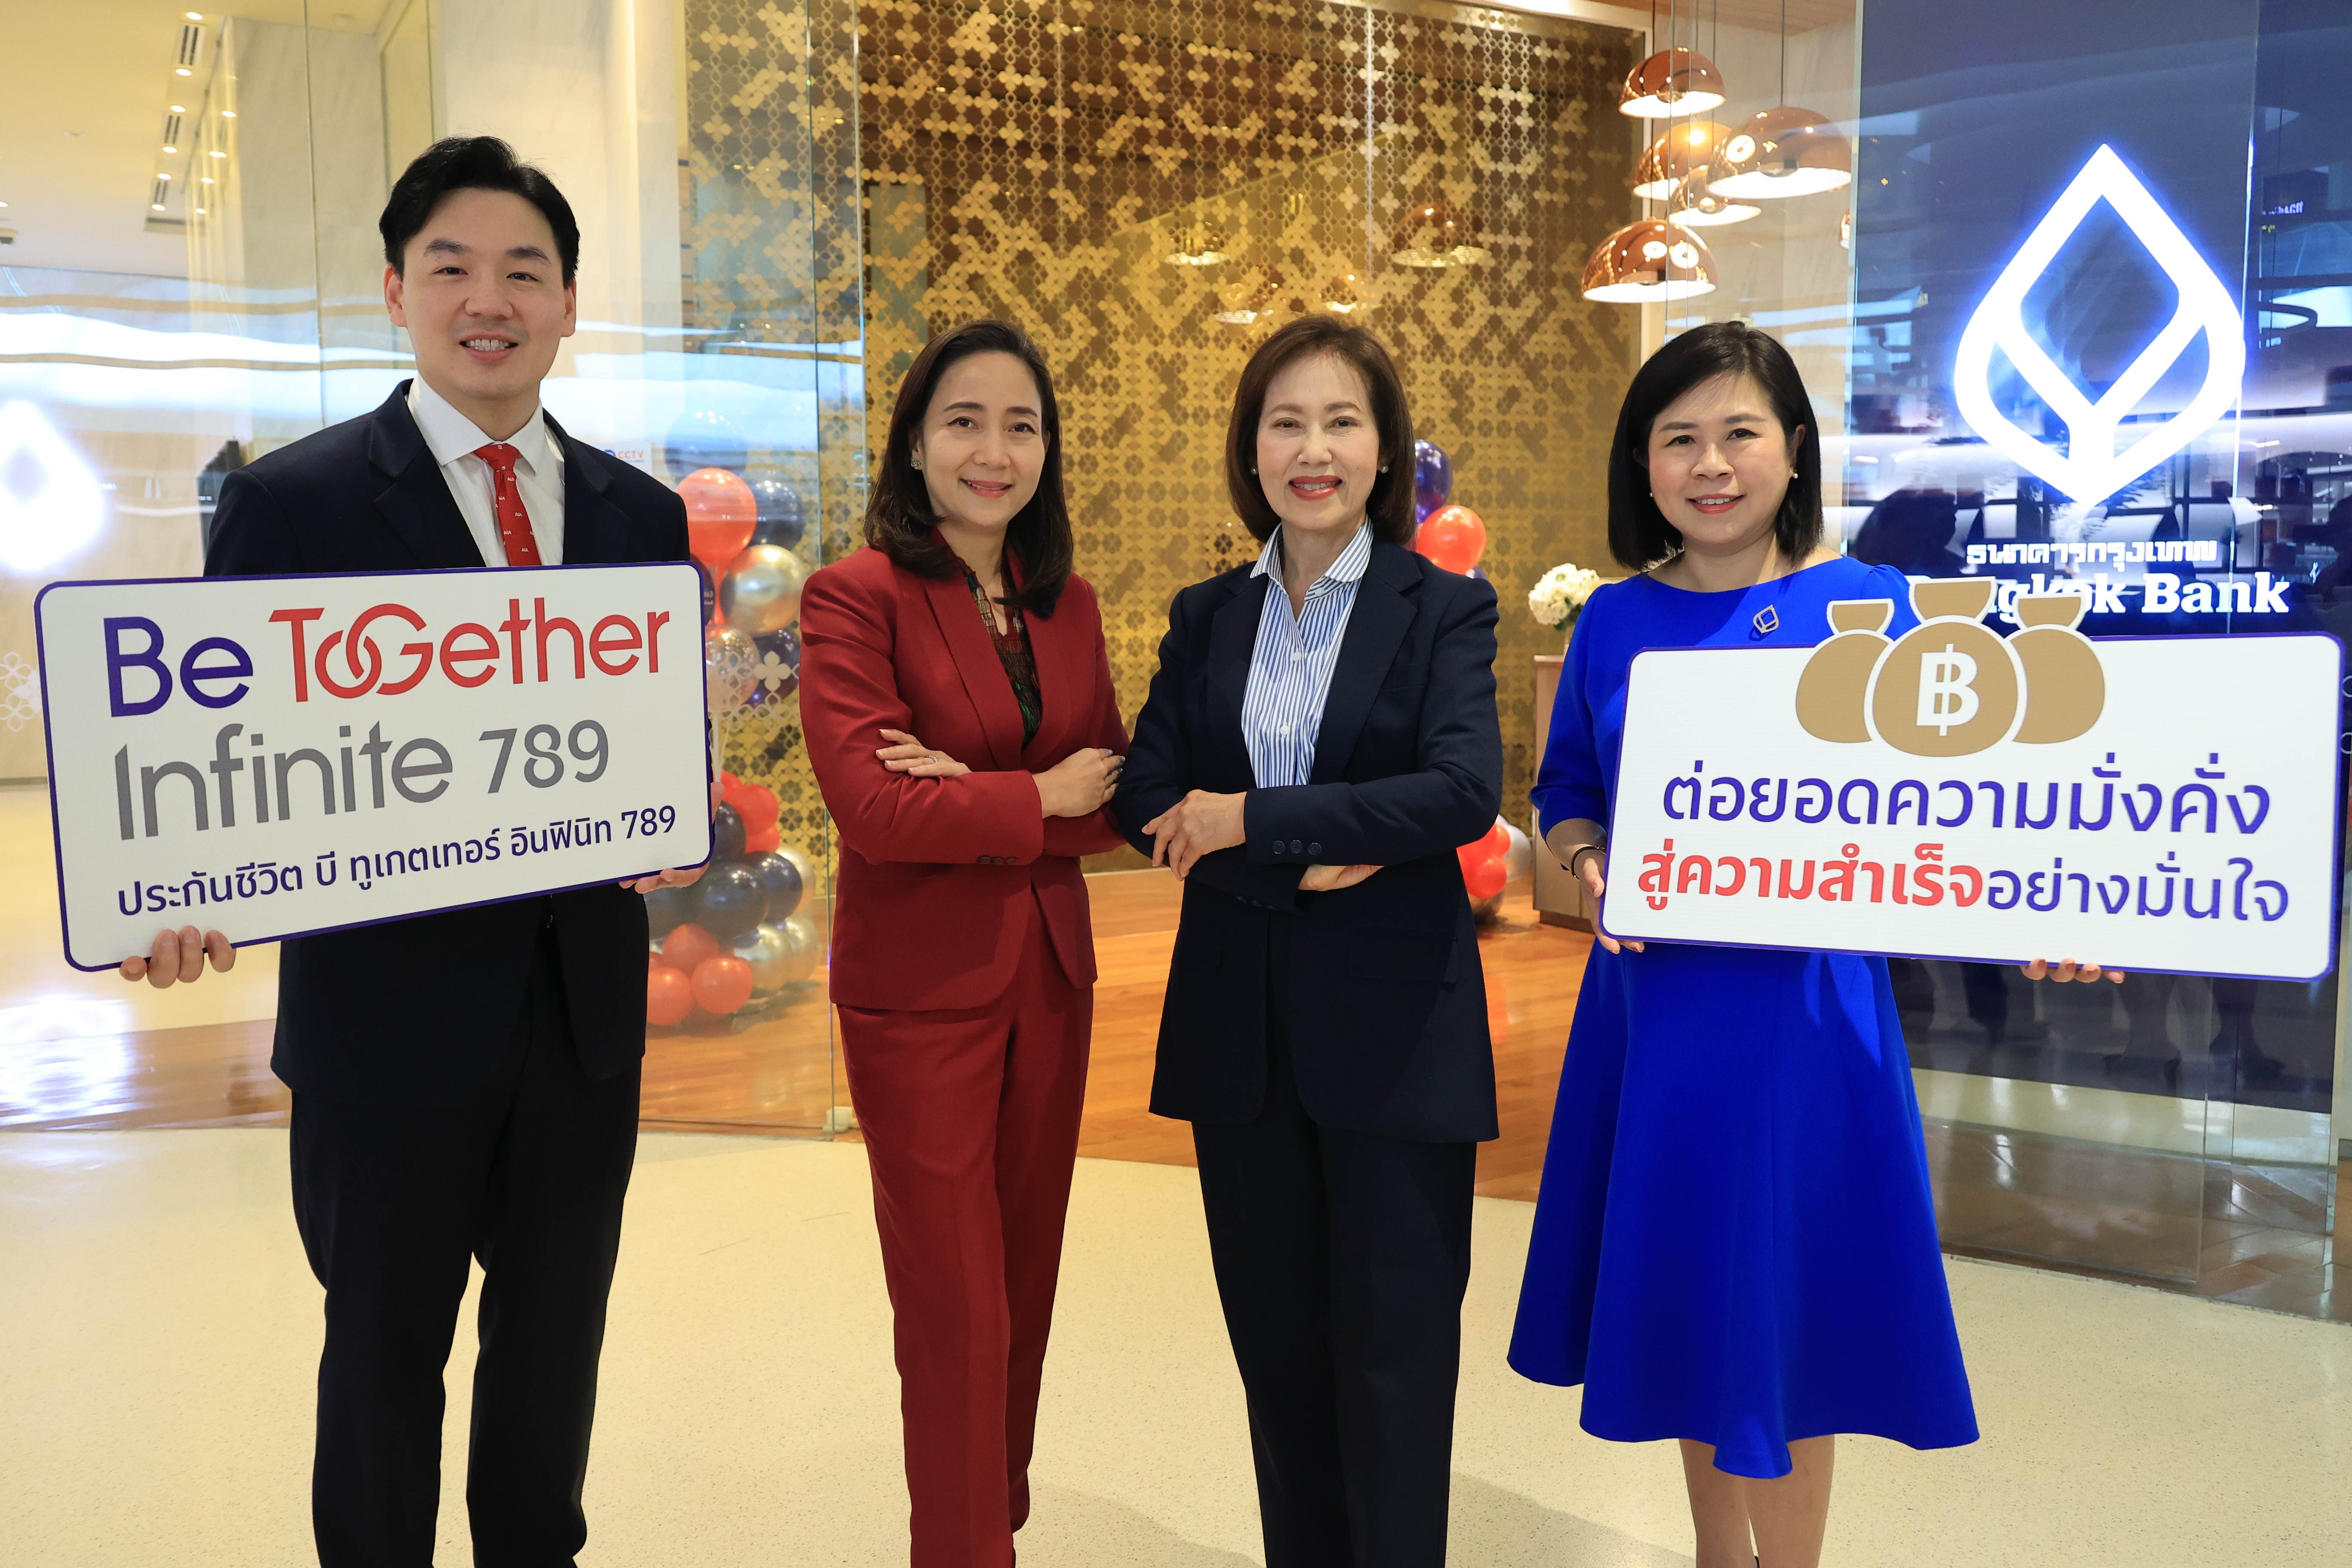 เอไอเอ ประเทศไทย จับมือ ธนาคารกรุงเทพ เปิดตัว ‘Be Together Infinite 789’ ประกันชีวิตแบบสะสมทรัพย์ พร้อมต่อยอดความมั่งคั่งและมั่นคงให้กับคนไทย